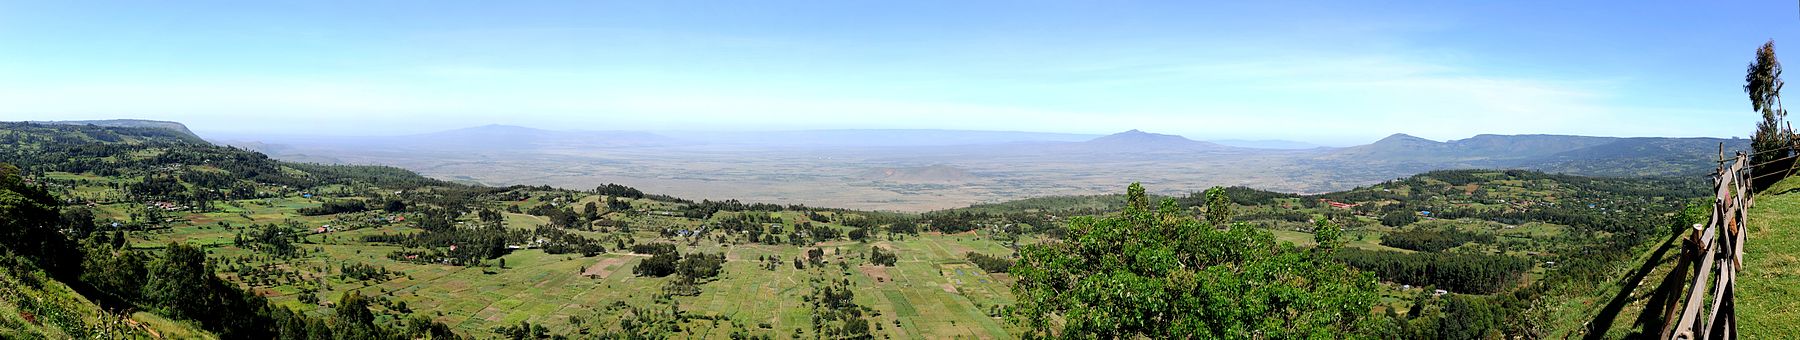 Vallée du grand rift, Kenya.